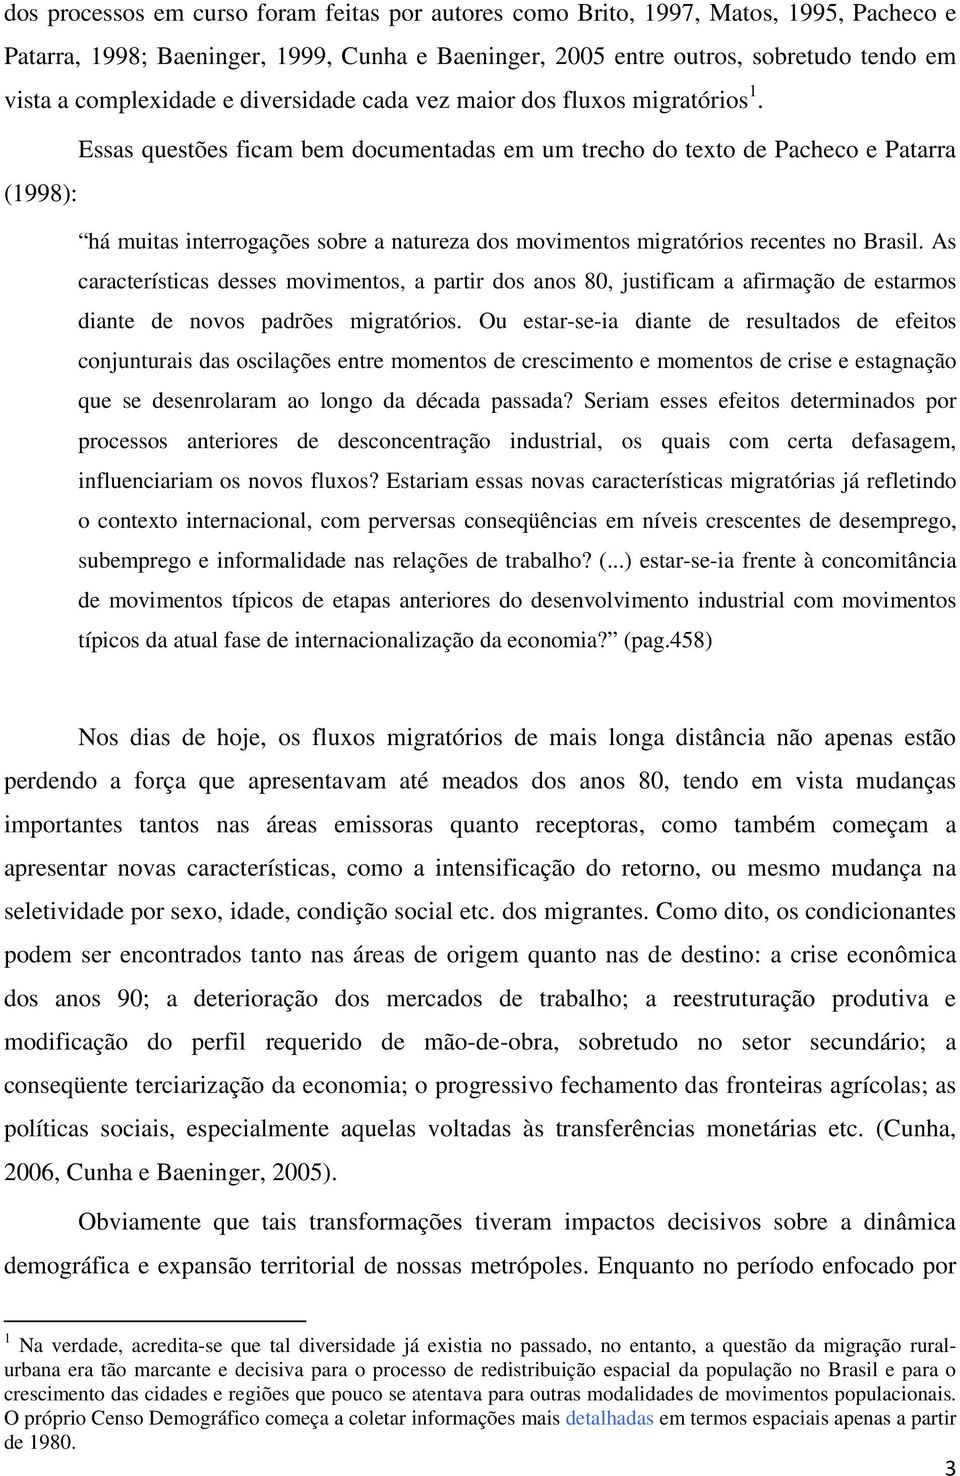 Essas questões ficam bem documentadas em um trecho do texto de Pacheco e Patarra (1998): há muitas interrogações sobre a natureza dos movimentos migratórios recentes no Brasil.